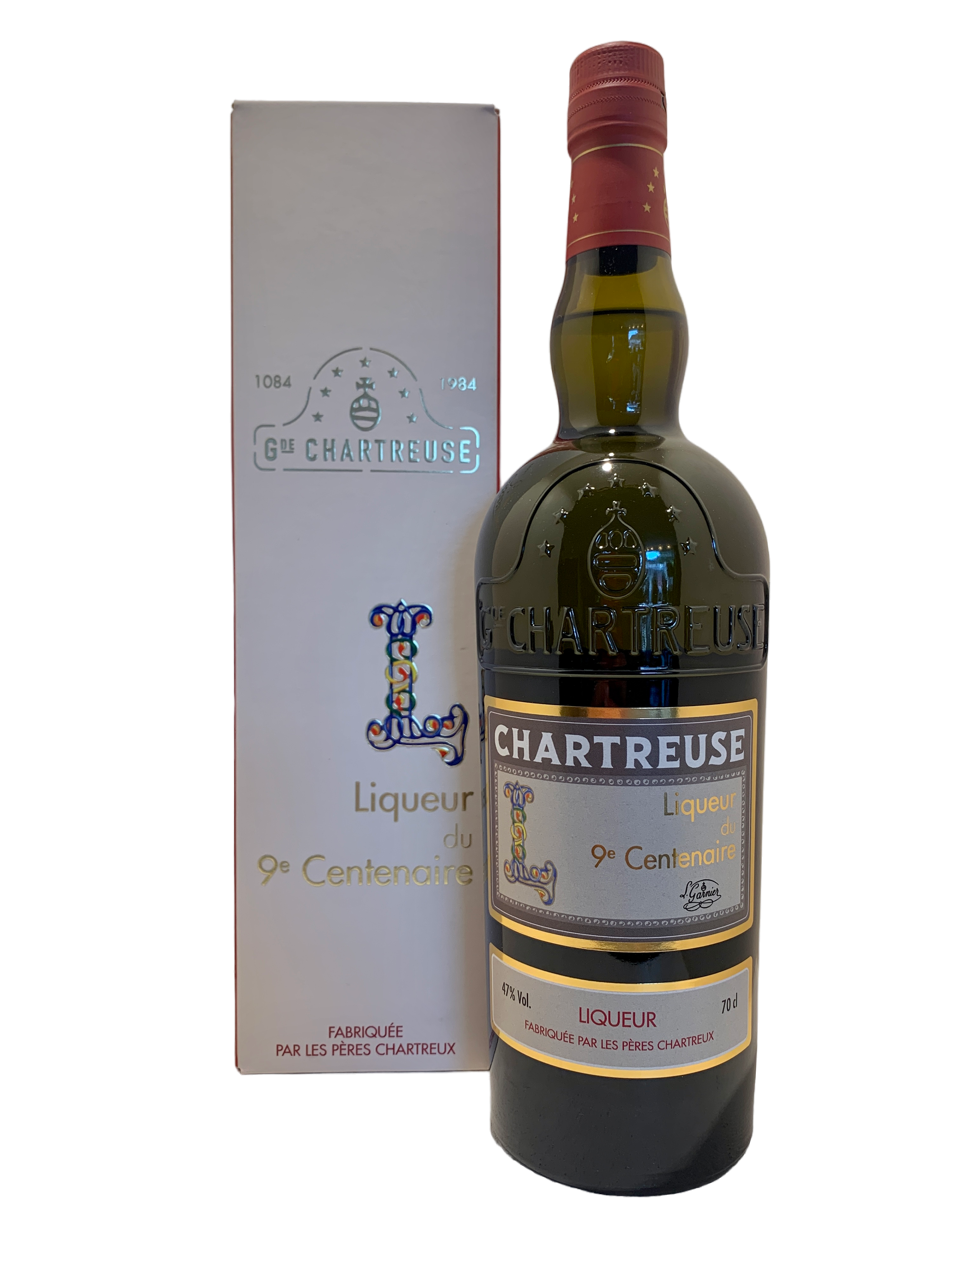 les pères chartreux voiron entre deux guiers liqueur de plante chartreuse liqueur du 9ème centenaire